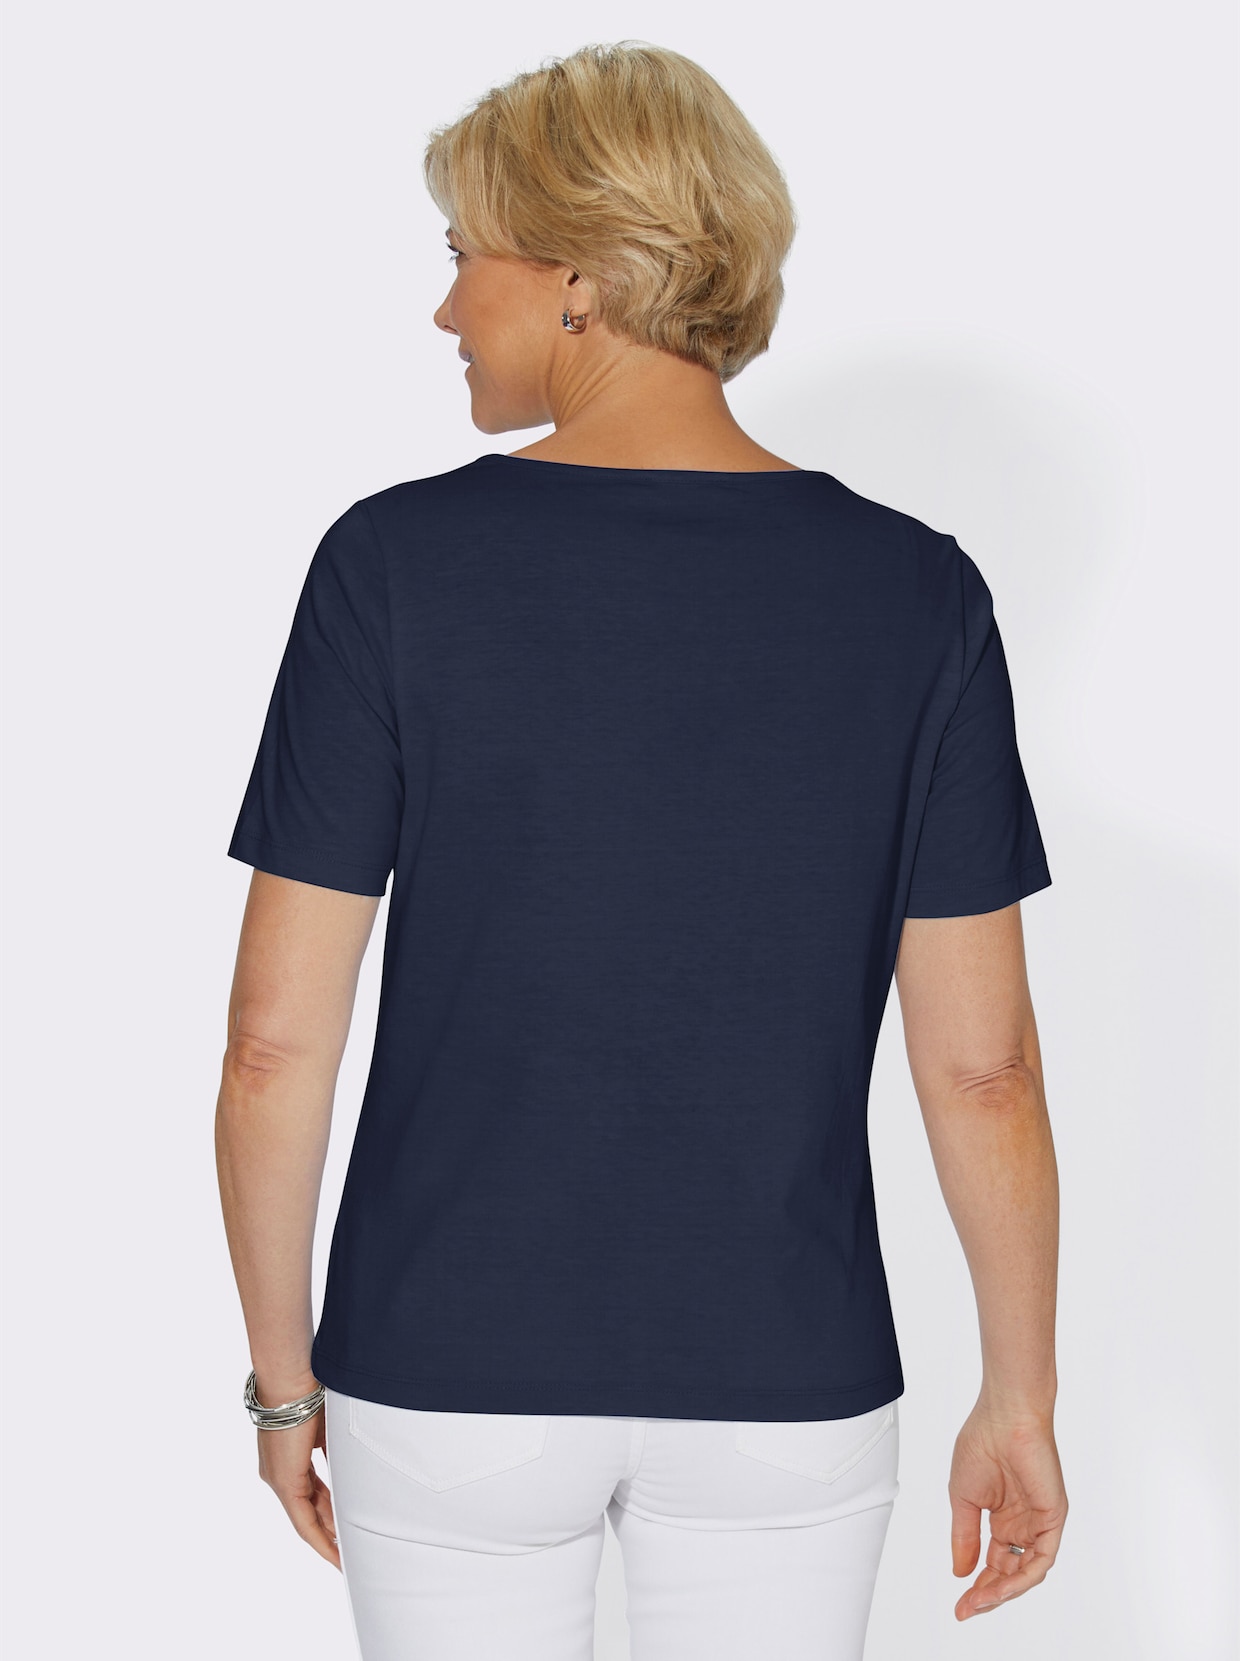 Tričko s krátkým rukávem - noční modrá